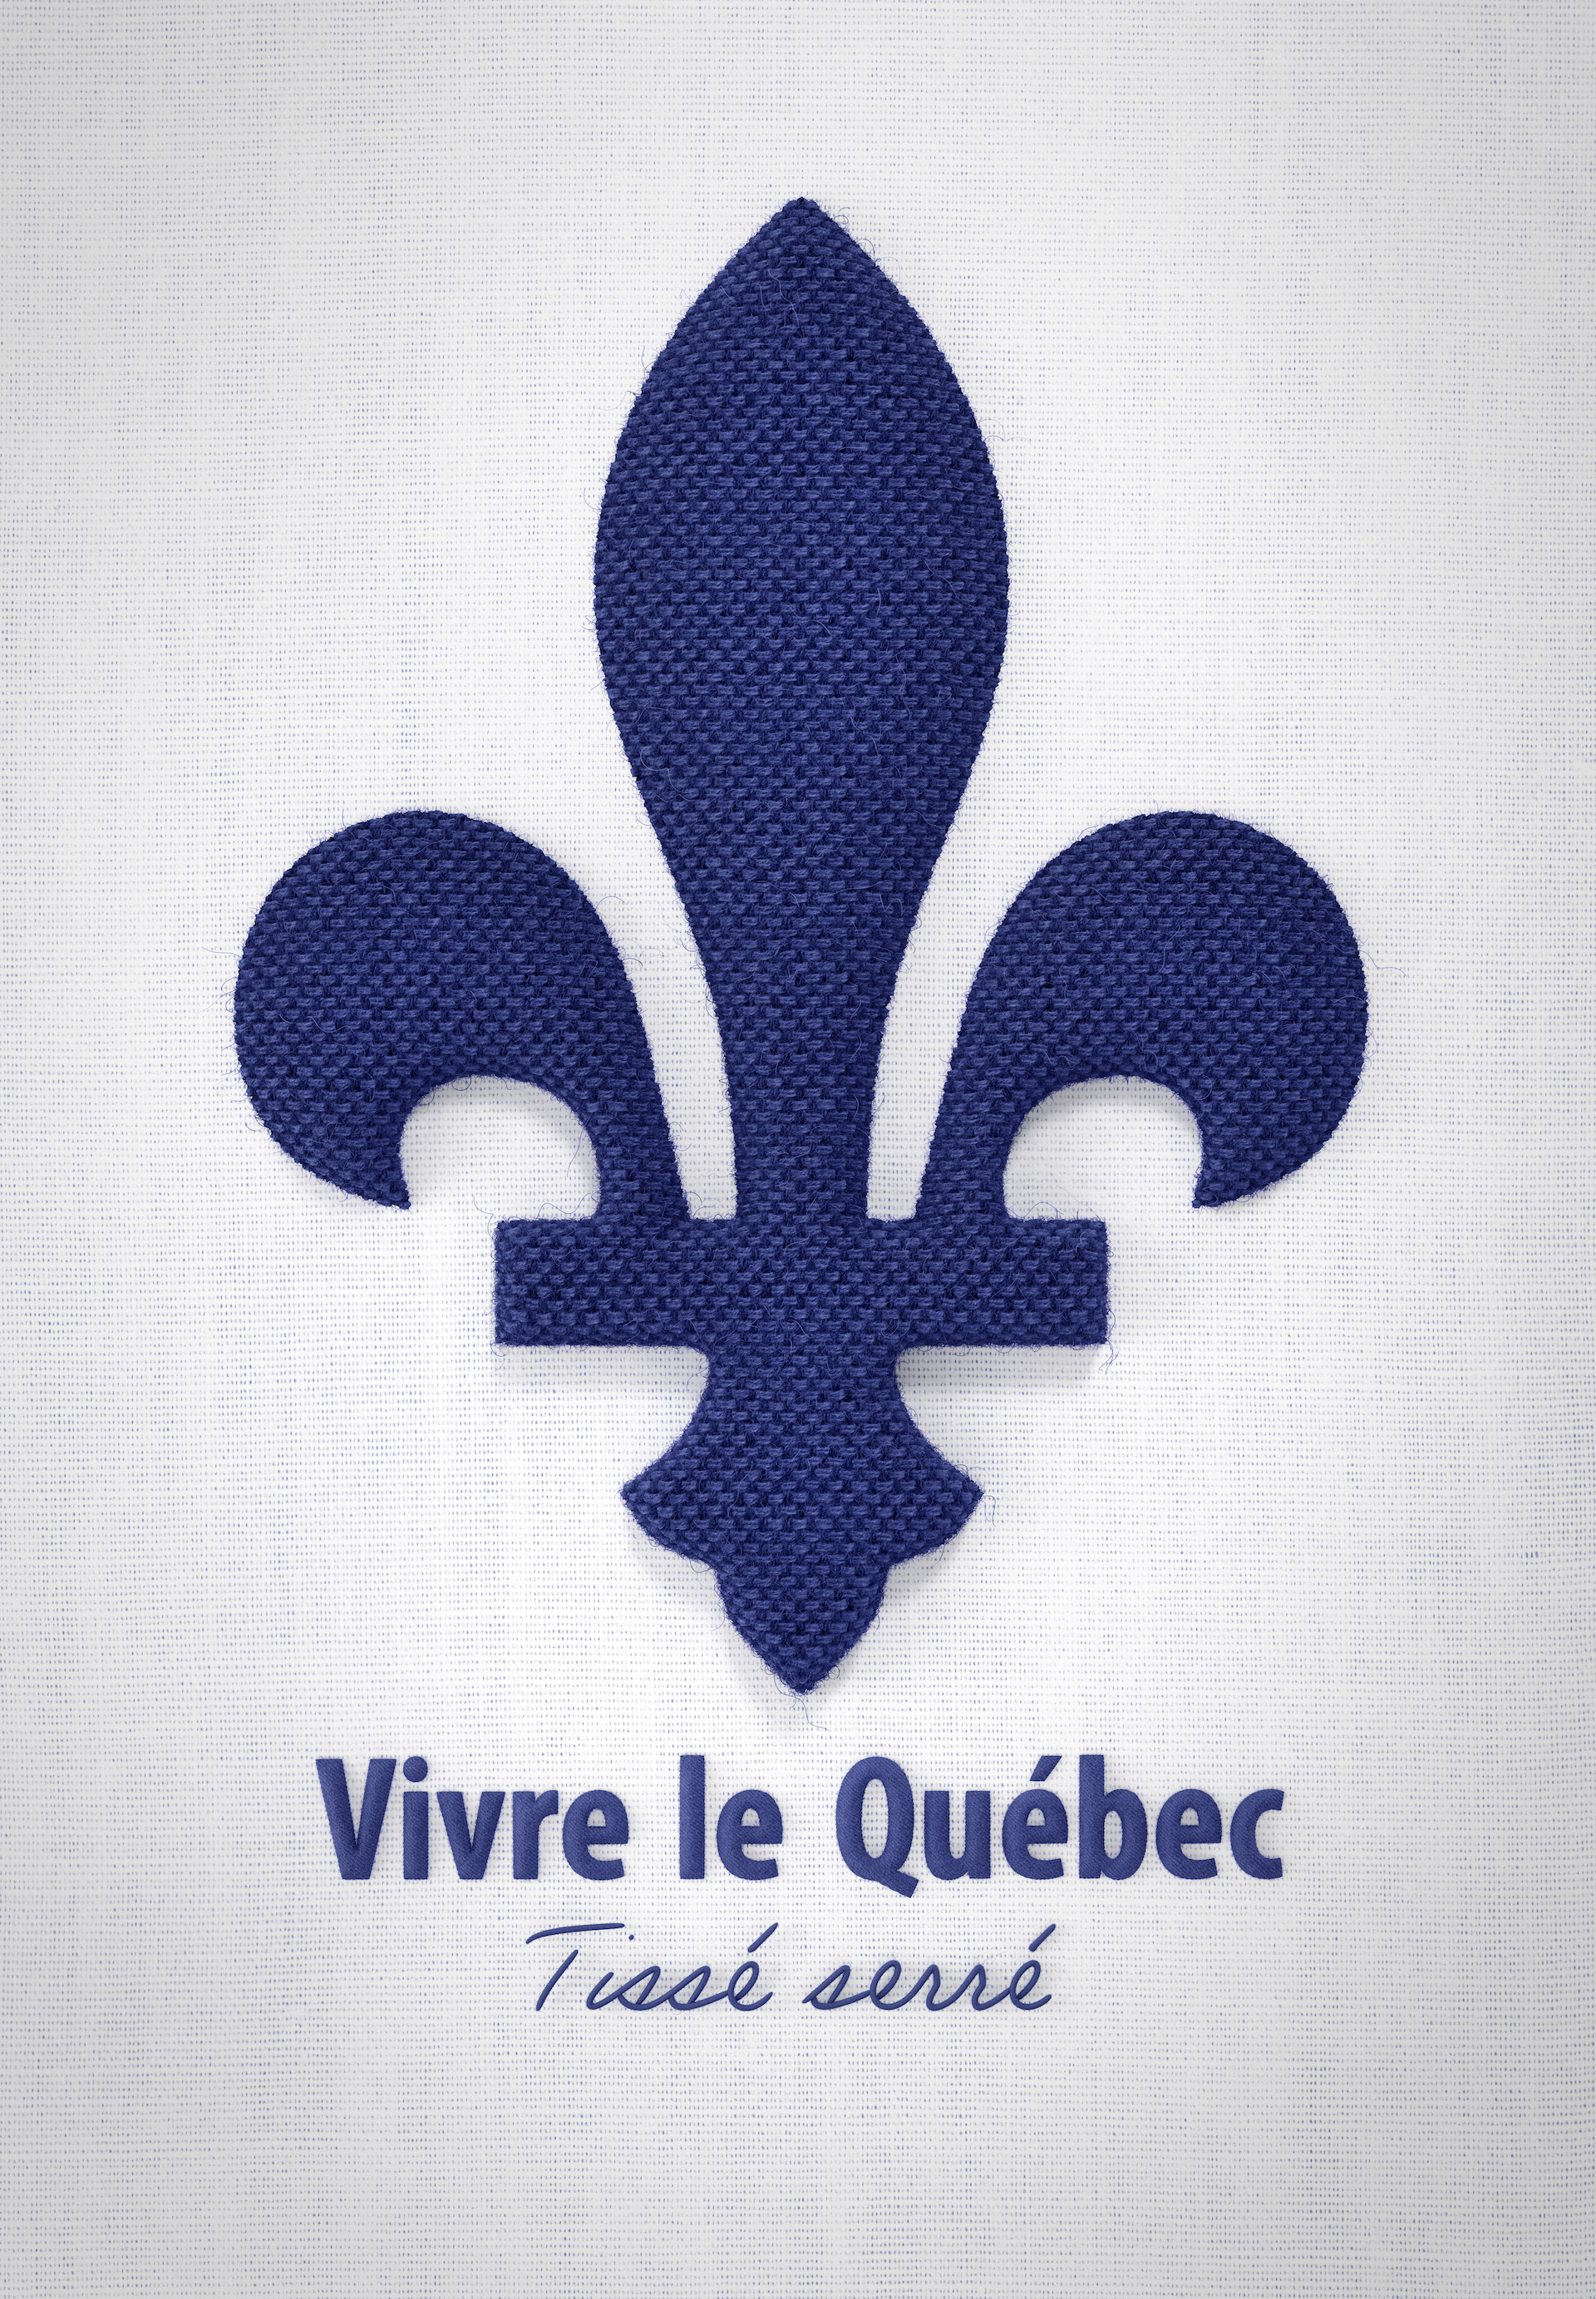 KUB Studio | Texture 3D | Fleur de lys bleue tissée sur fond blanc avec slogan "Vivre le Québec: Tissé serré"